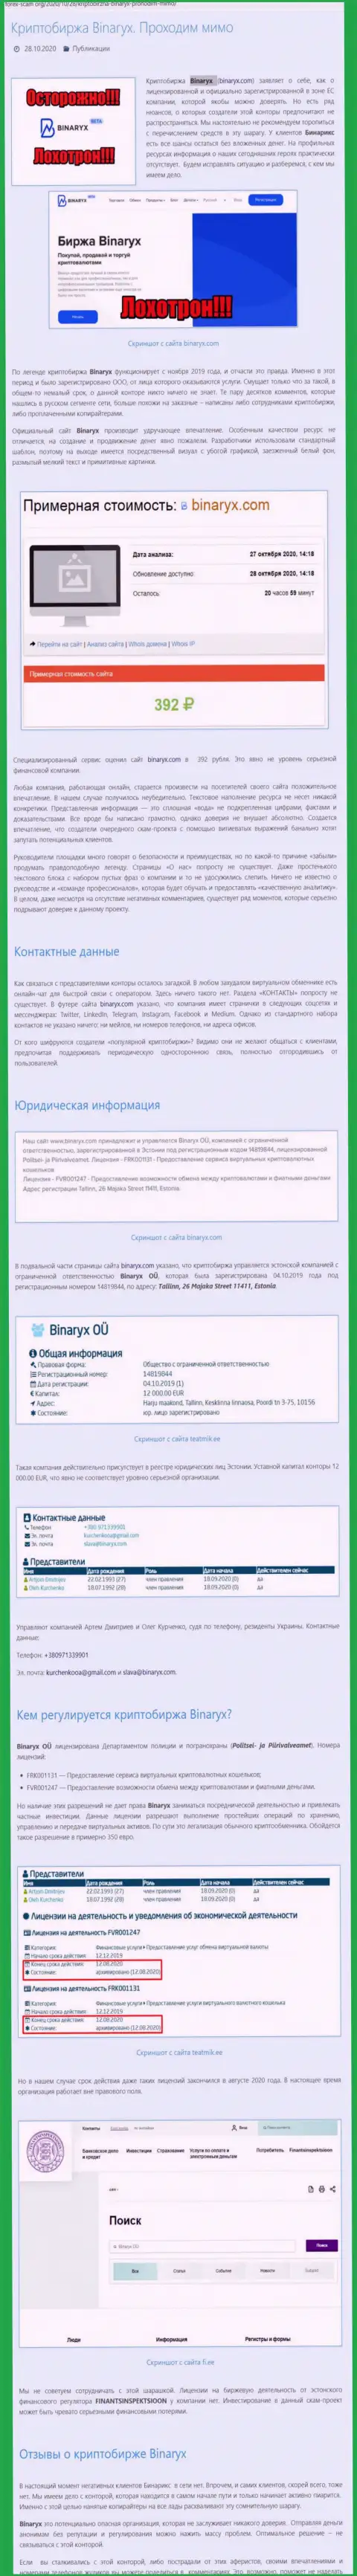 Binaryx Com - это МОШЕННИКИ !!! Грабеж денежных вложений гарантируют стопроцентно (обзор конторы)